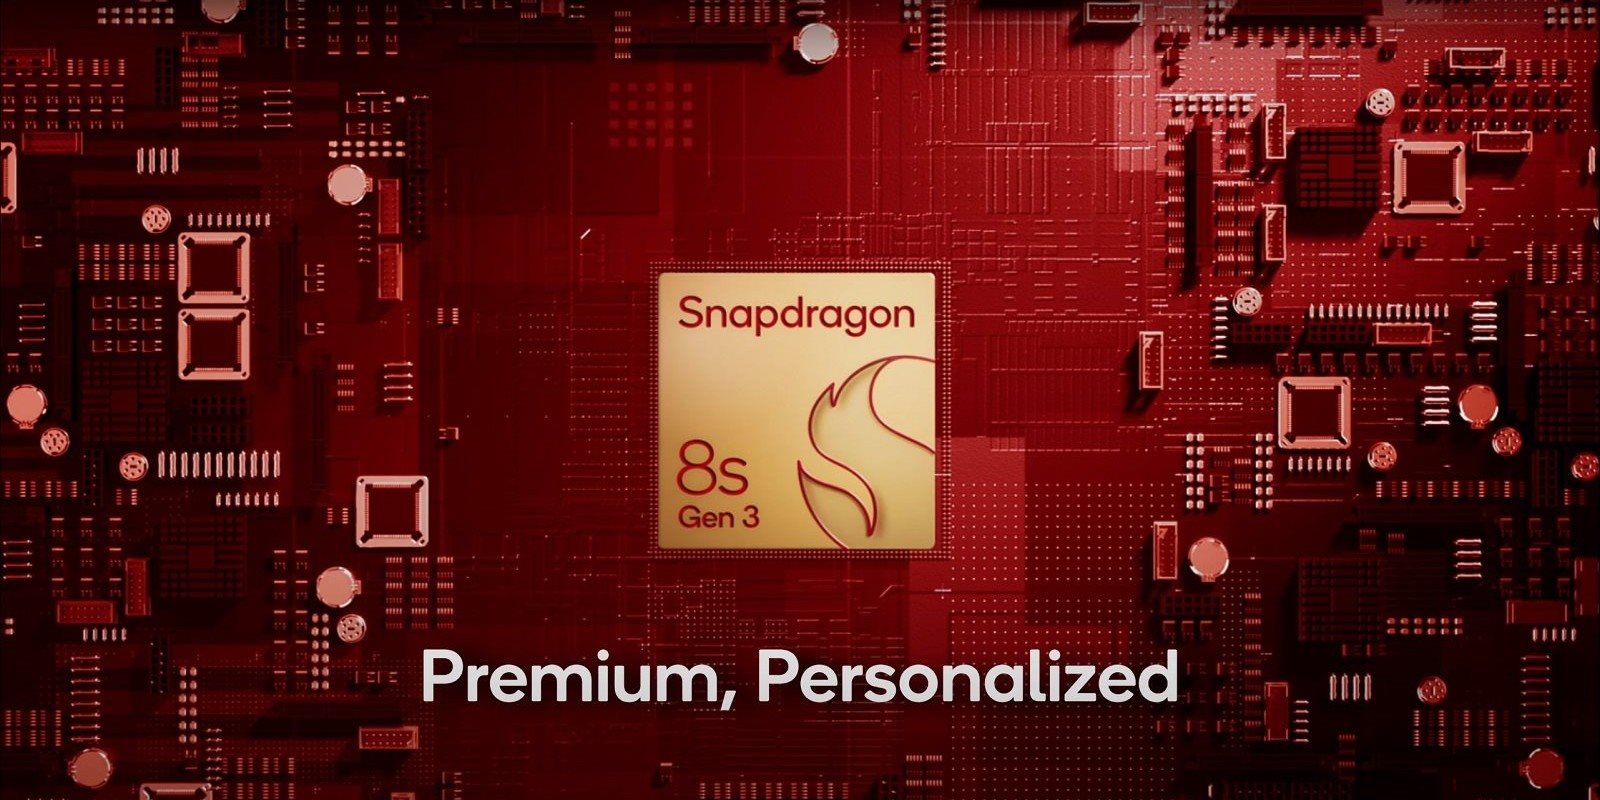 Qualcomm Snapdragon 8s Gen 3, Vorstellung